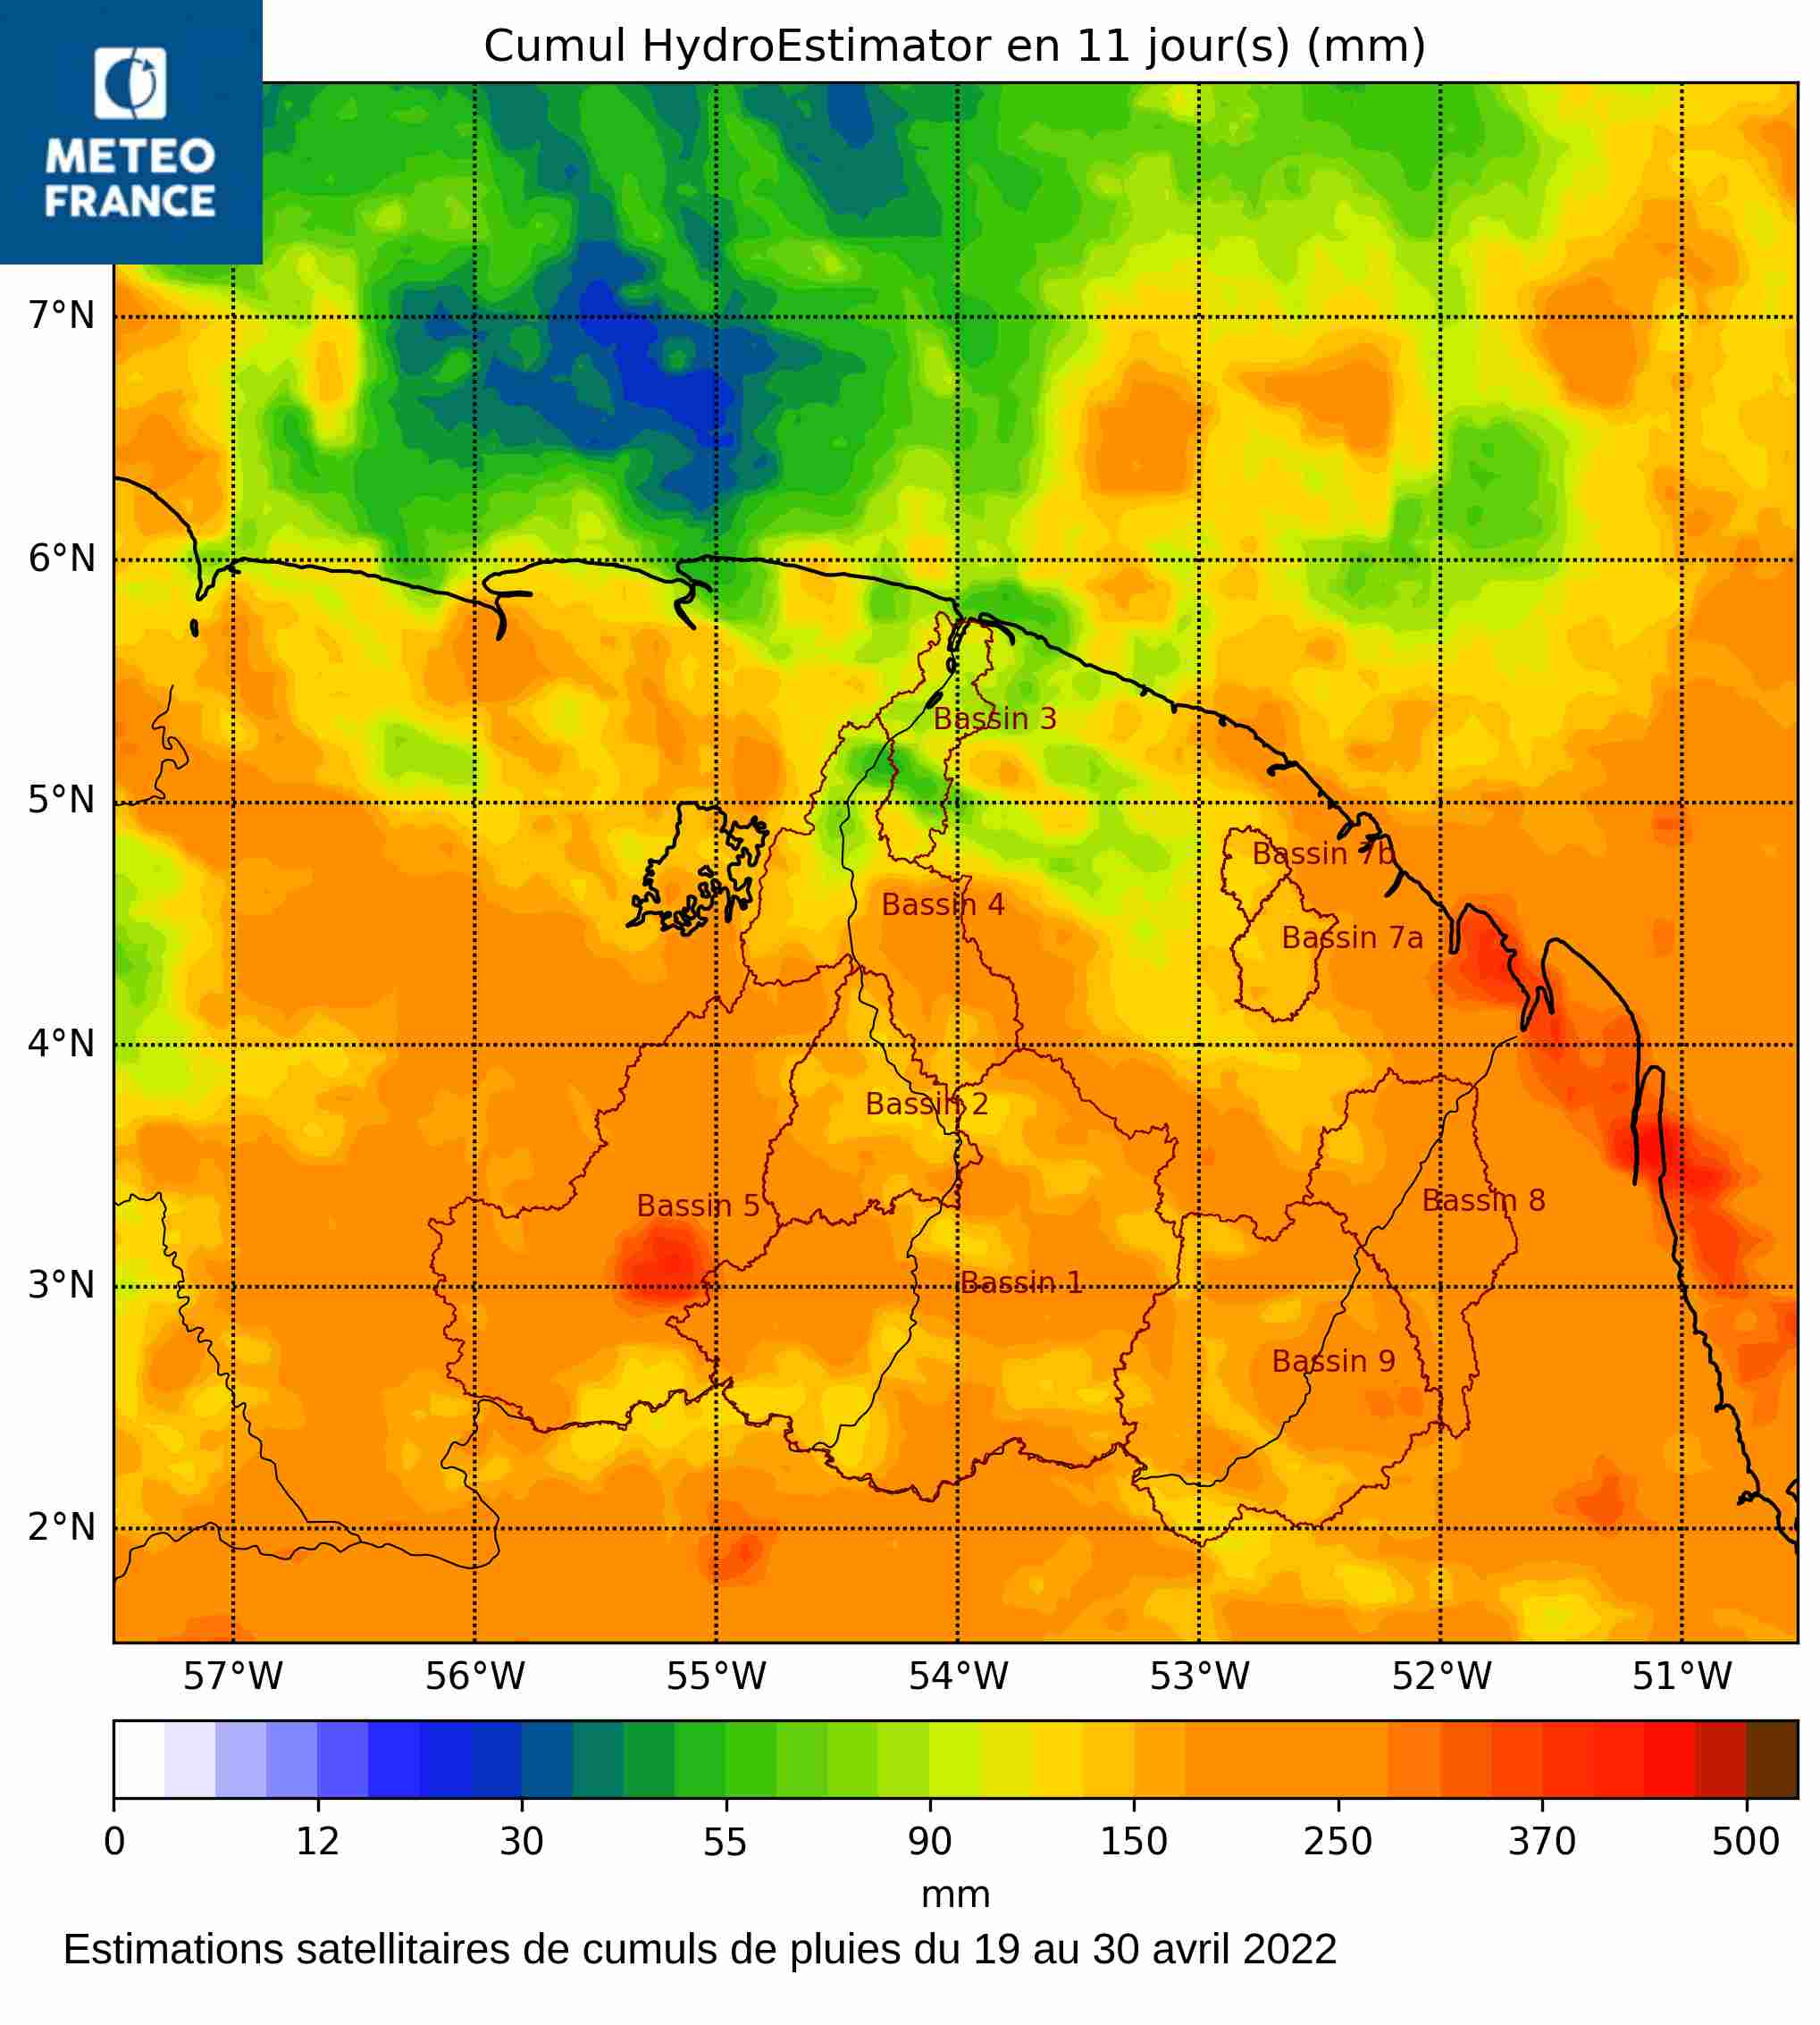 Estimations satellitaires de cumuls de pluies du 19 au 30 avril 2022